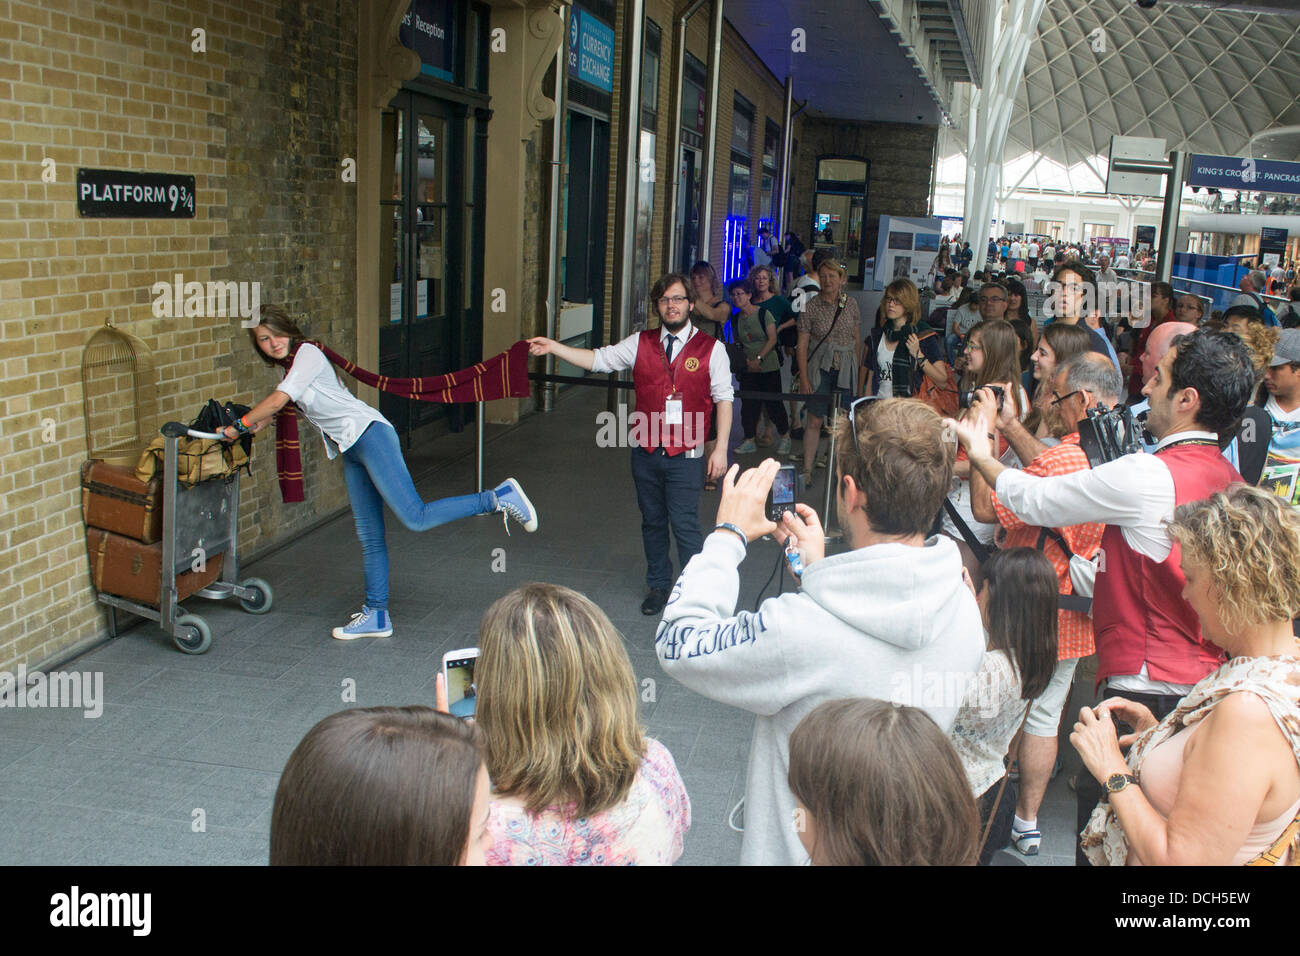 Tourist's Watch en tant que fan de Harry Potter tente d'entrer dans la plate-forme 9 3/4 à la gare de King's Cross, Londres, Angleterre Banque D'Images